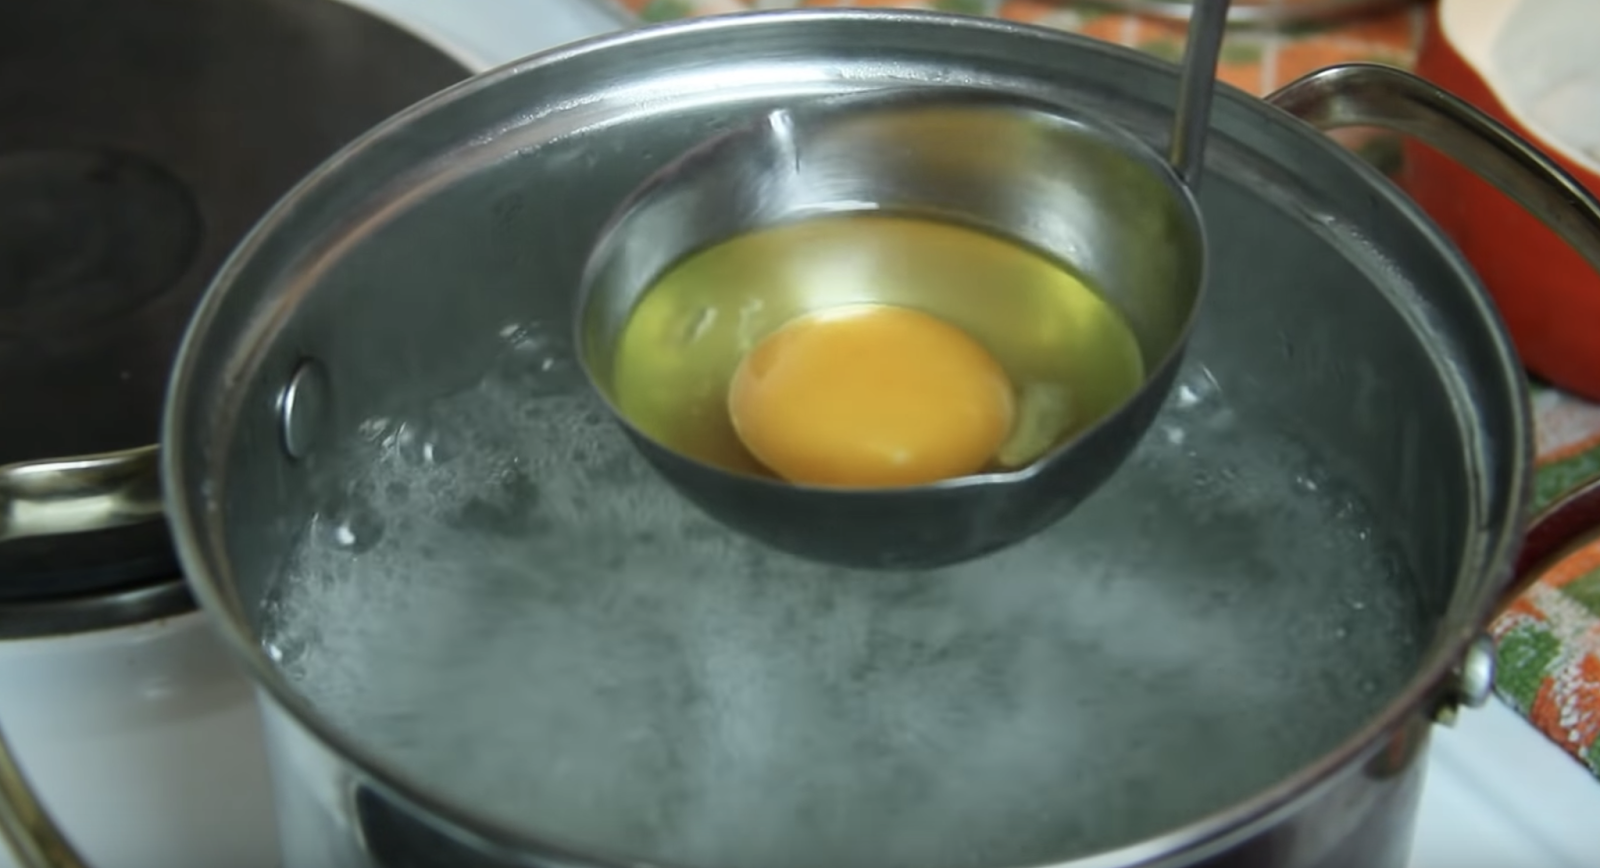 Пашот яйца рецепт в кастрюле. Варка яиц пашот. Яйцо пашот в силиконовой форме. Приготовление яйца пашот пошагово. Яйцо пашот на сковороде с водой.